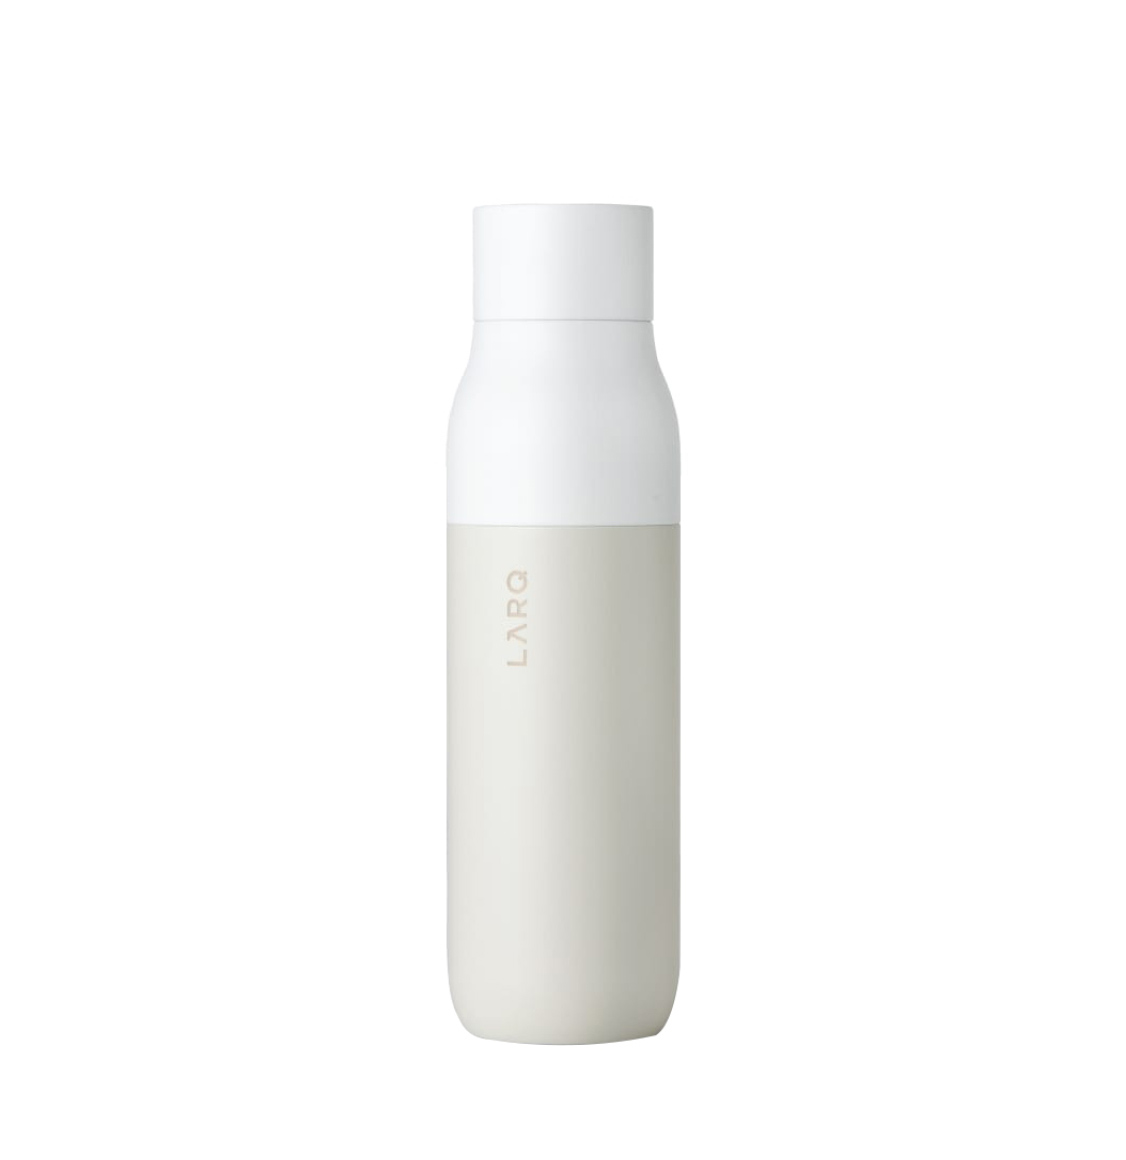 Μπουκάλι Νερού Με Σύστημα Καθαρισμού Νερού Λευκό LARQ Bottle White 500ml